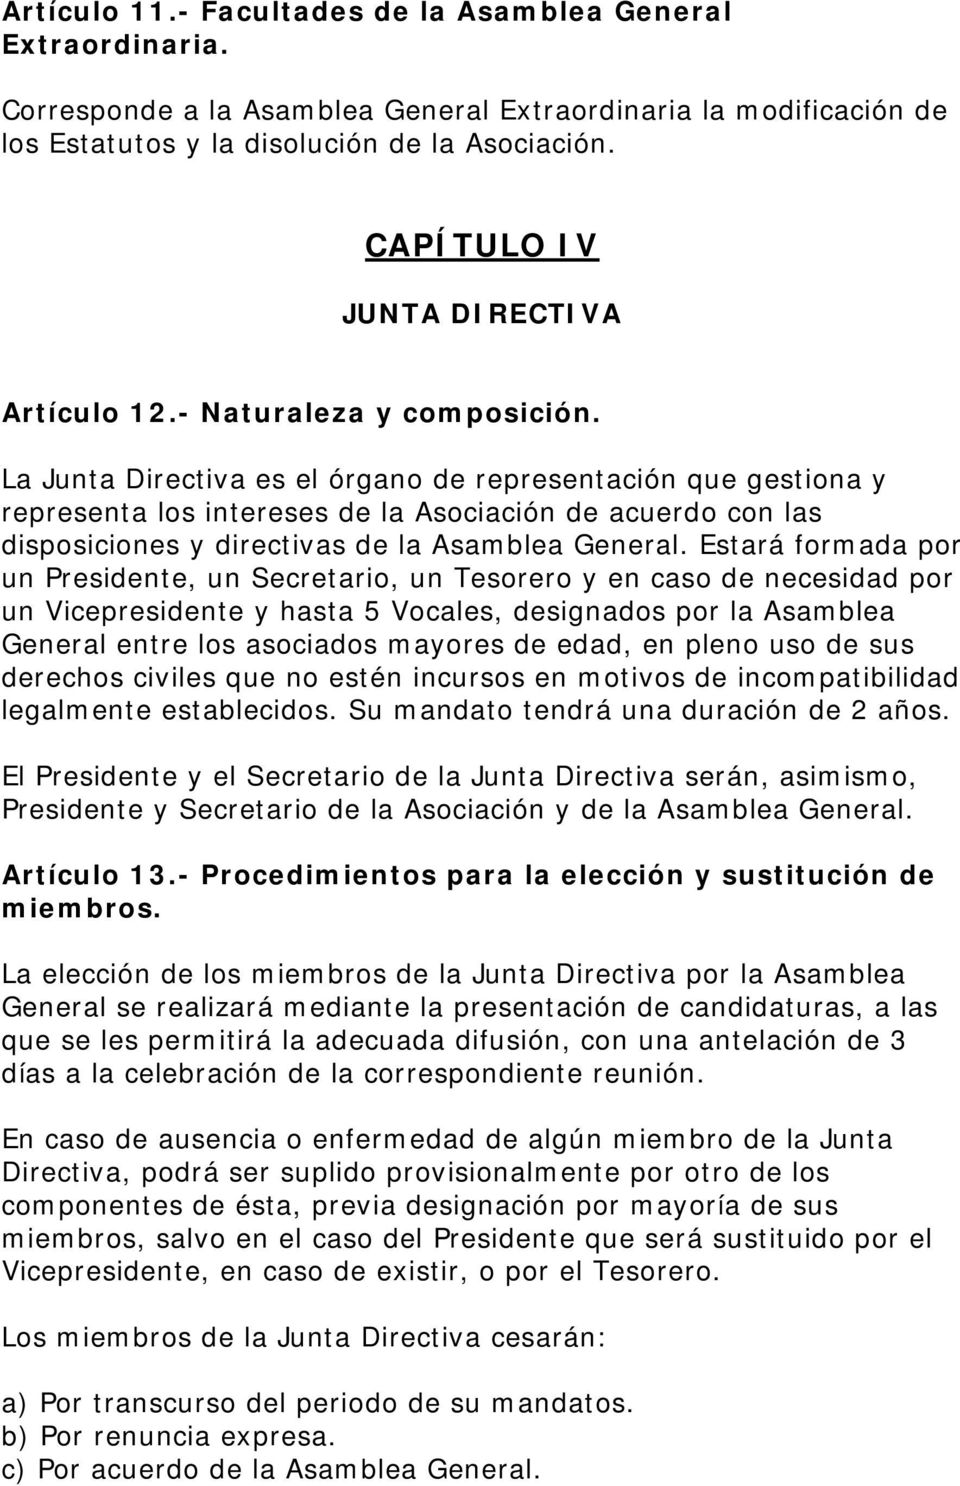 La Junta Directiva es el órgano de representación que gestiona y representa los intereses de la Asociación de acuerdo con las disposiciones y directivas de la Asamblea General.